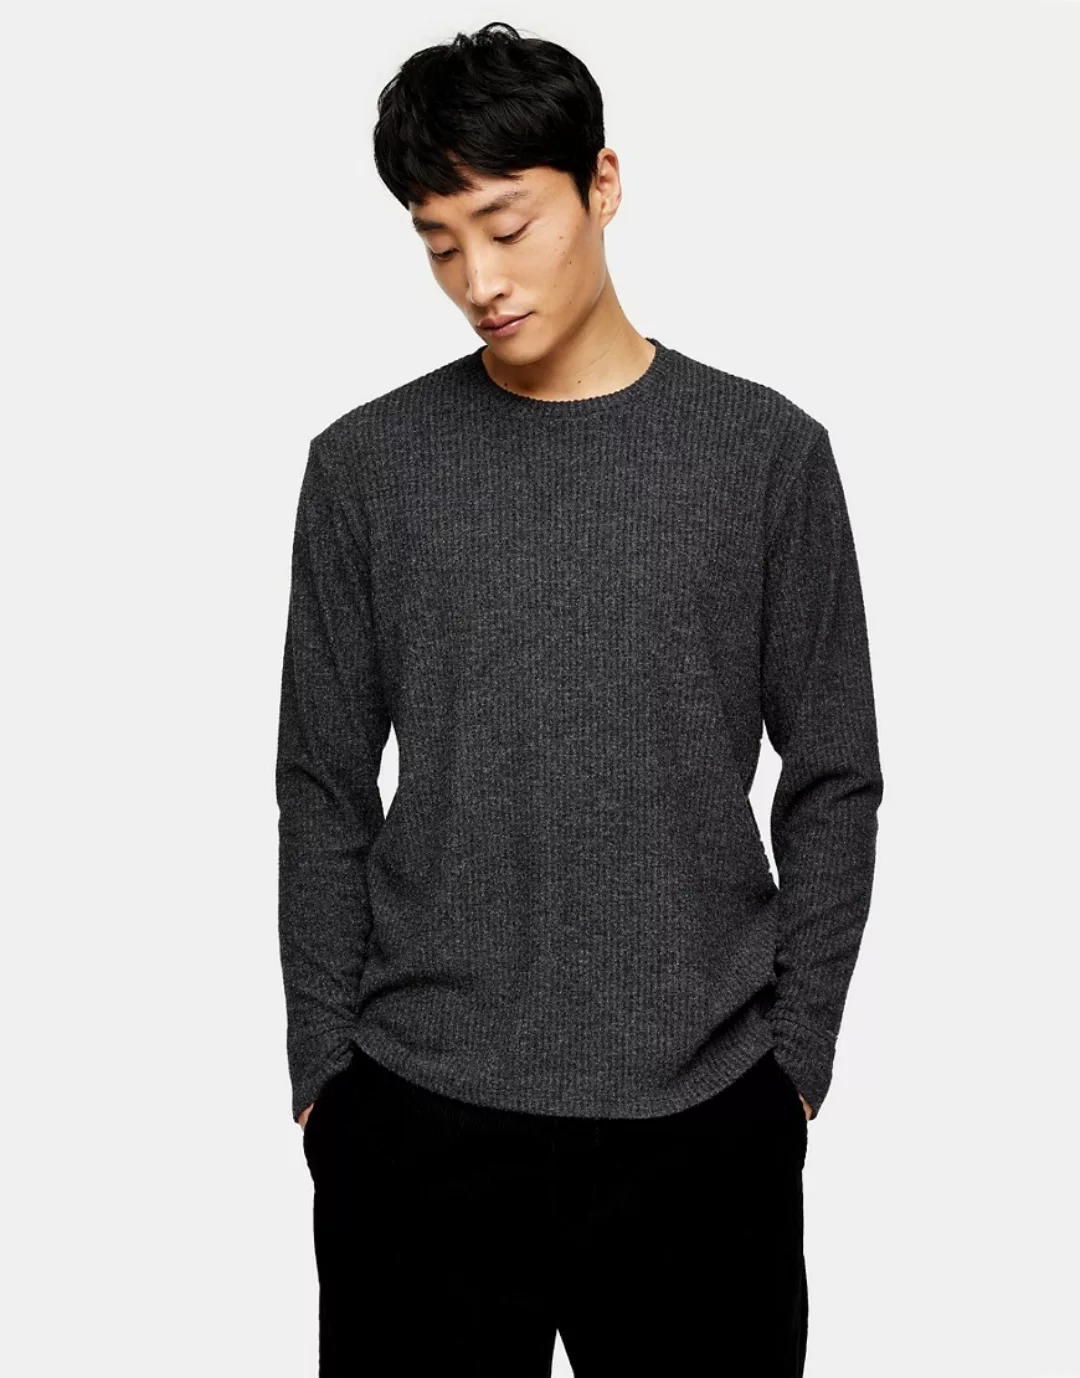 Topman – Langärmliges, geripptes Shirt in Anthrazit-Grau günstig online kaufen